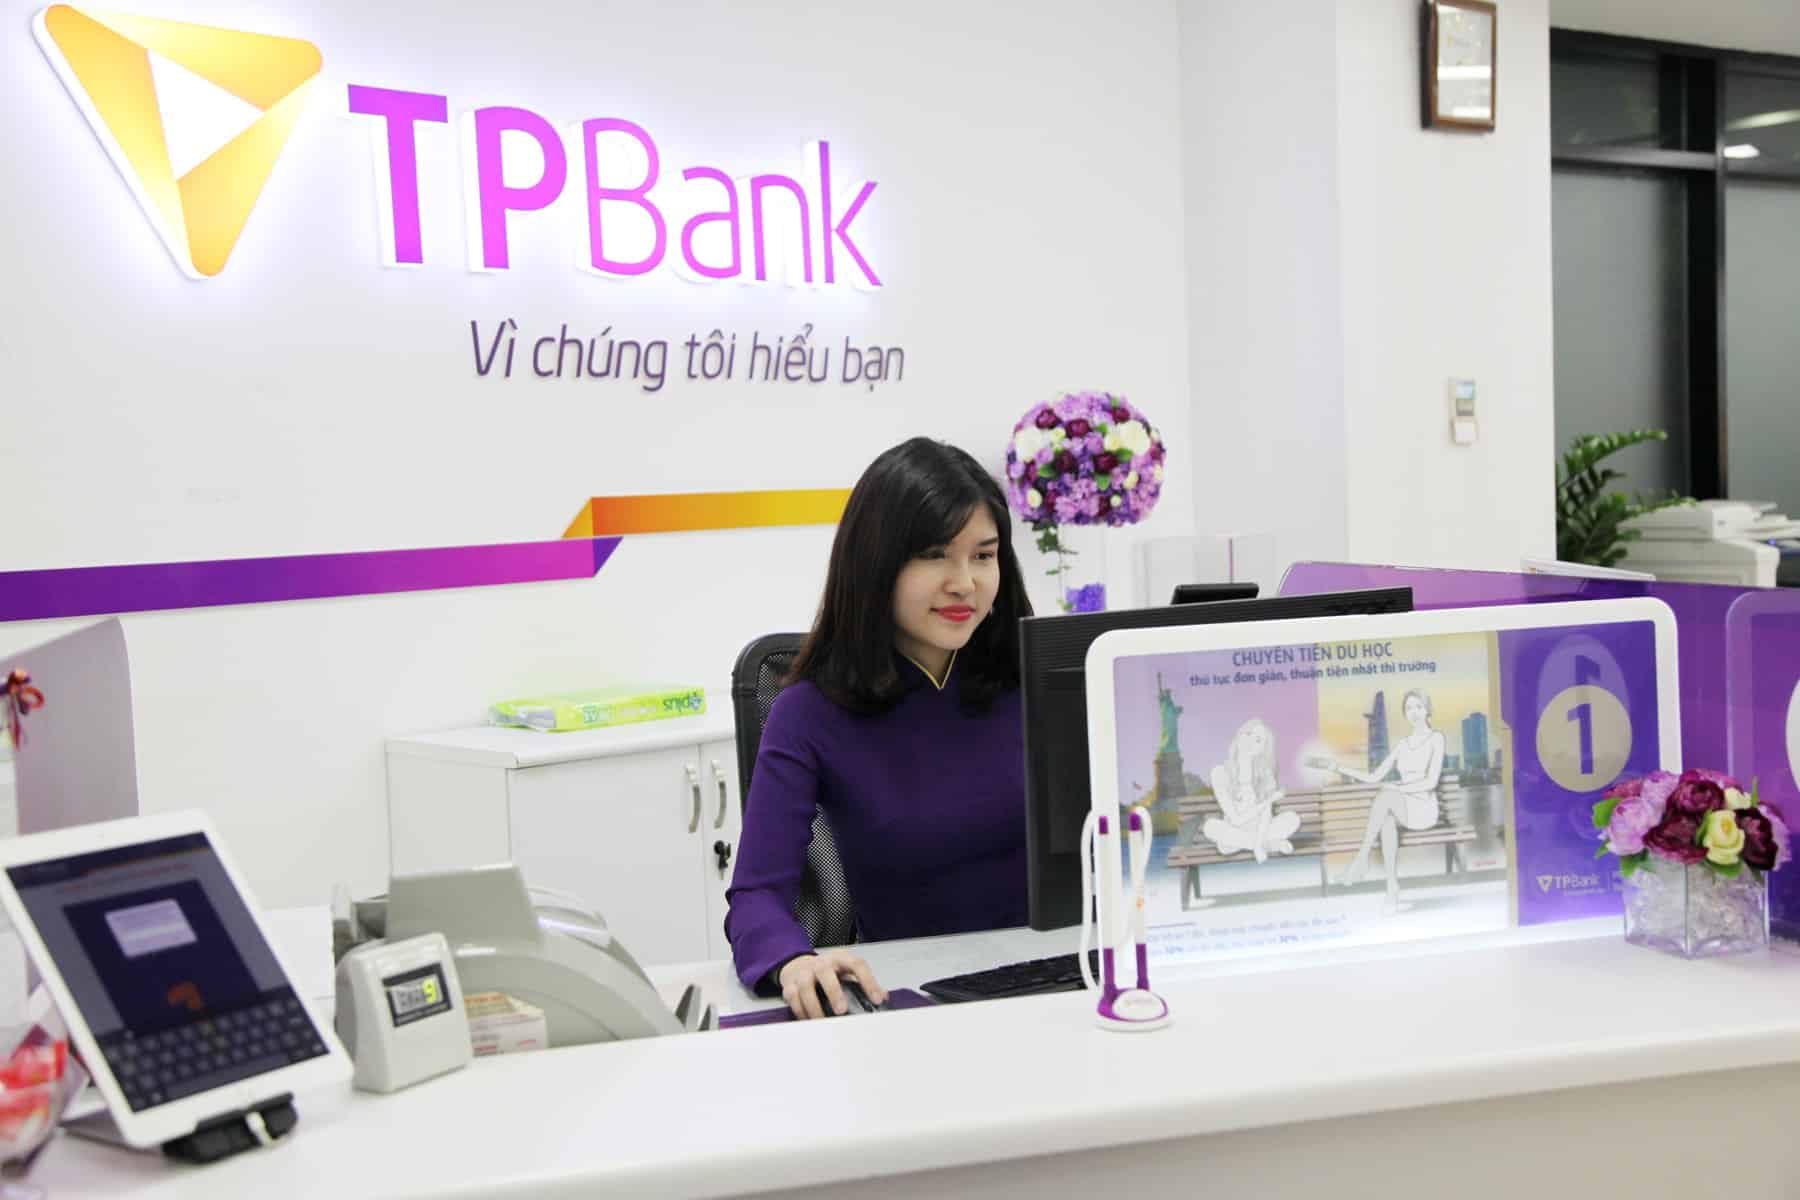 Vay tiền TP Bank bằng hợp đồng bảo hiểm nhân thọ Bảo Việt